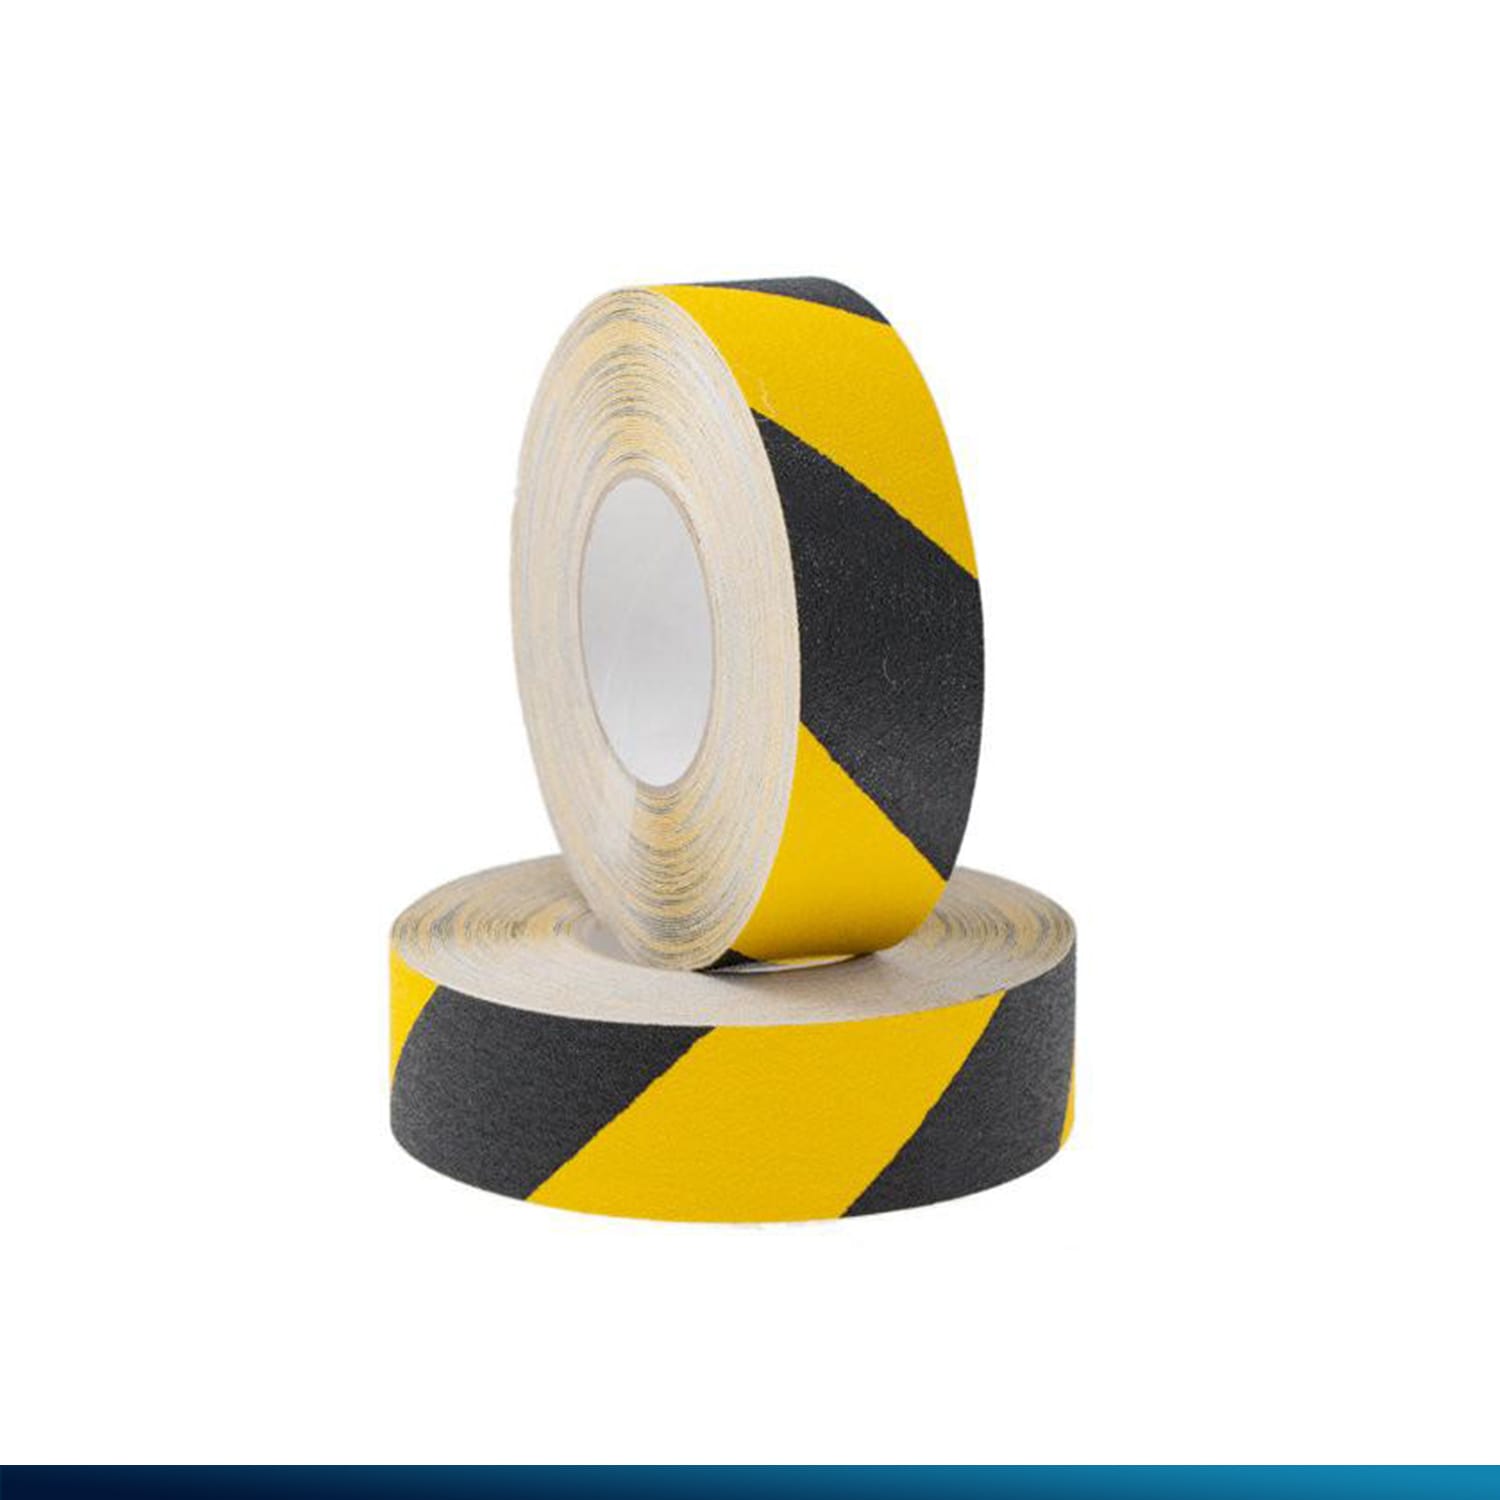 Anti Skid Tape - Yellow & Black Safety Anti Slip tape LifeKrafts